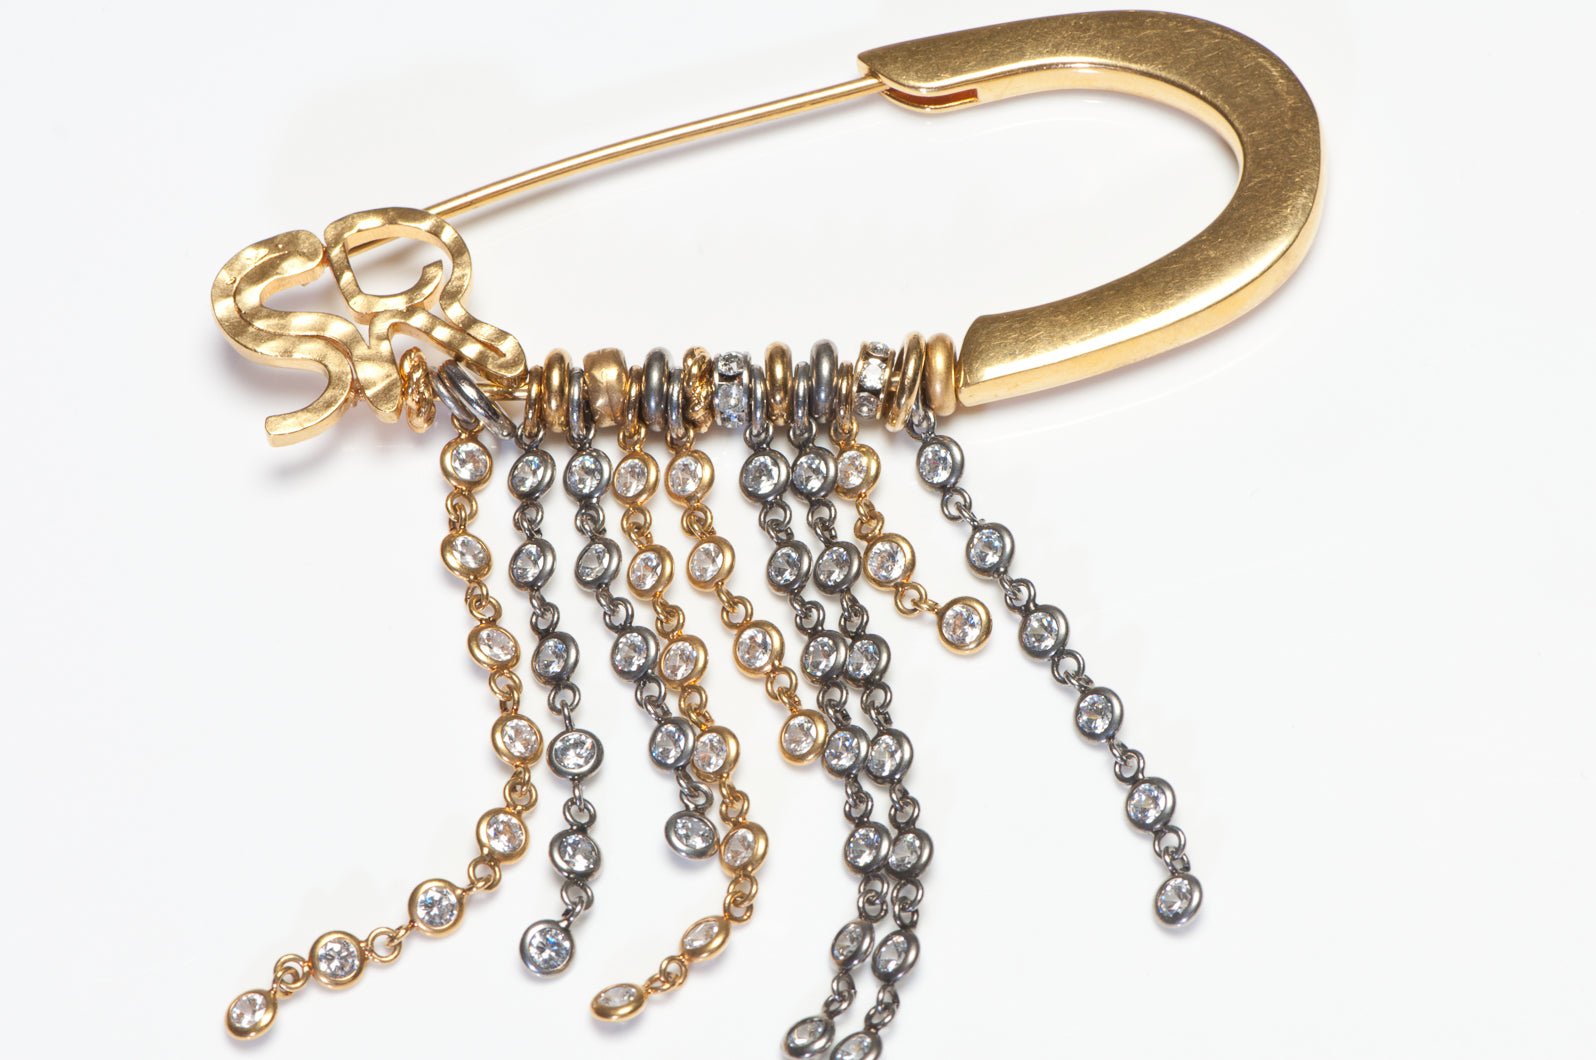 Sonia Rykiel Paris Gold Plated Crystal Tassel Safety Pin Brooch